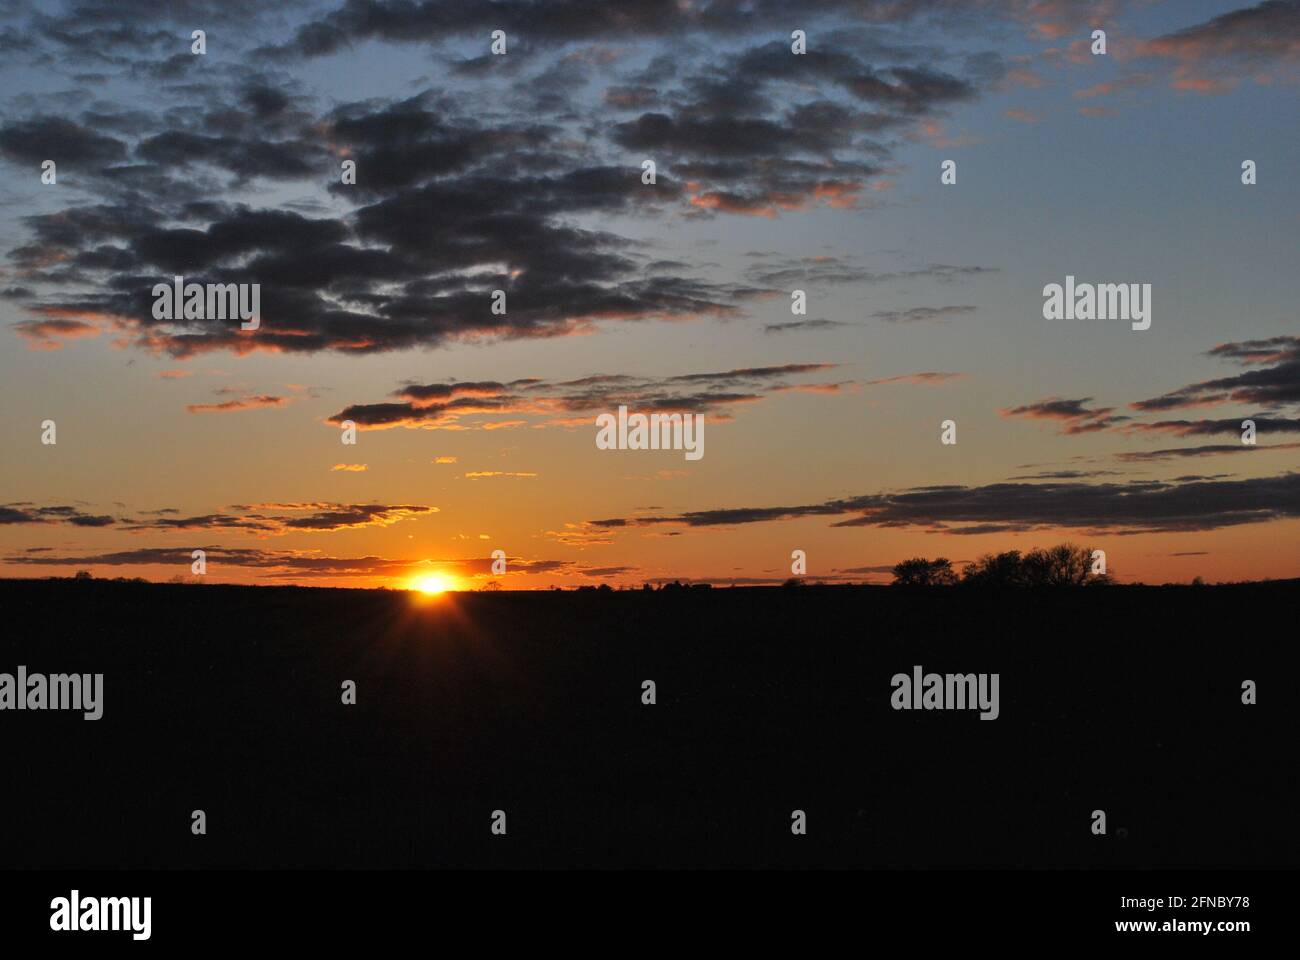 Sunset on horizon Stock Photo